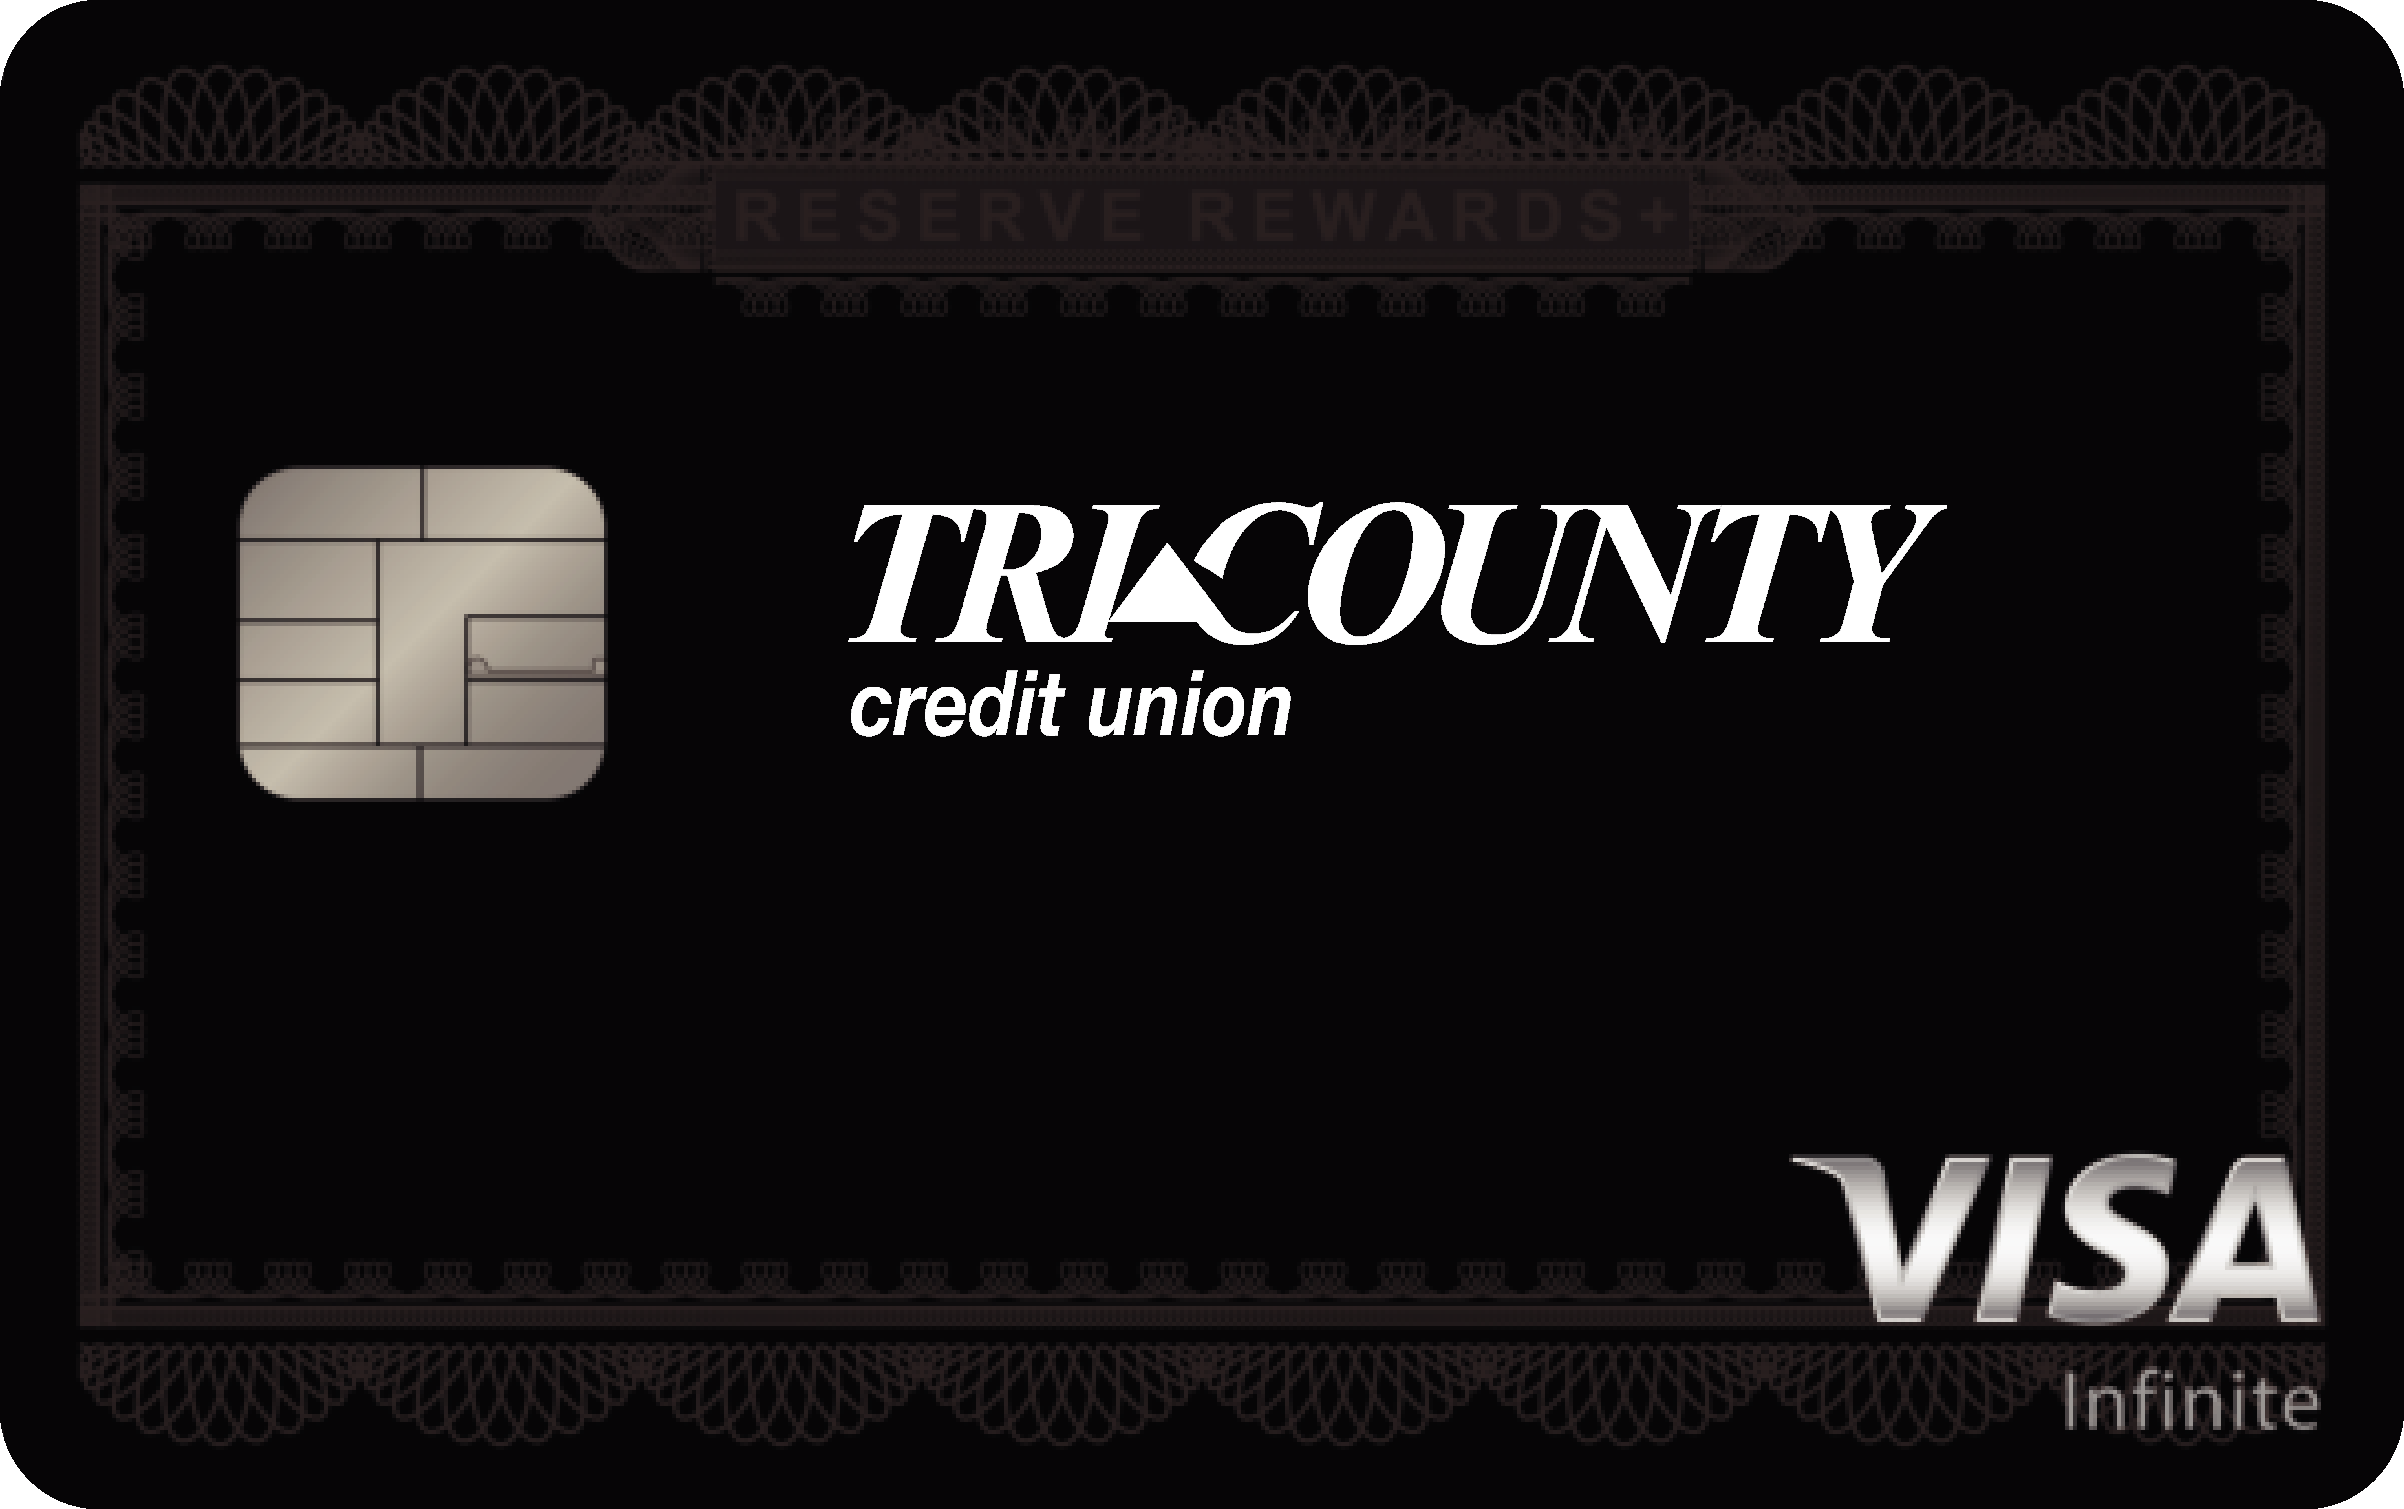 Tri County Credit Union